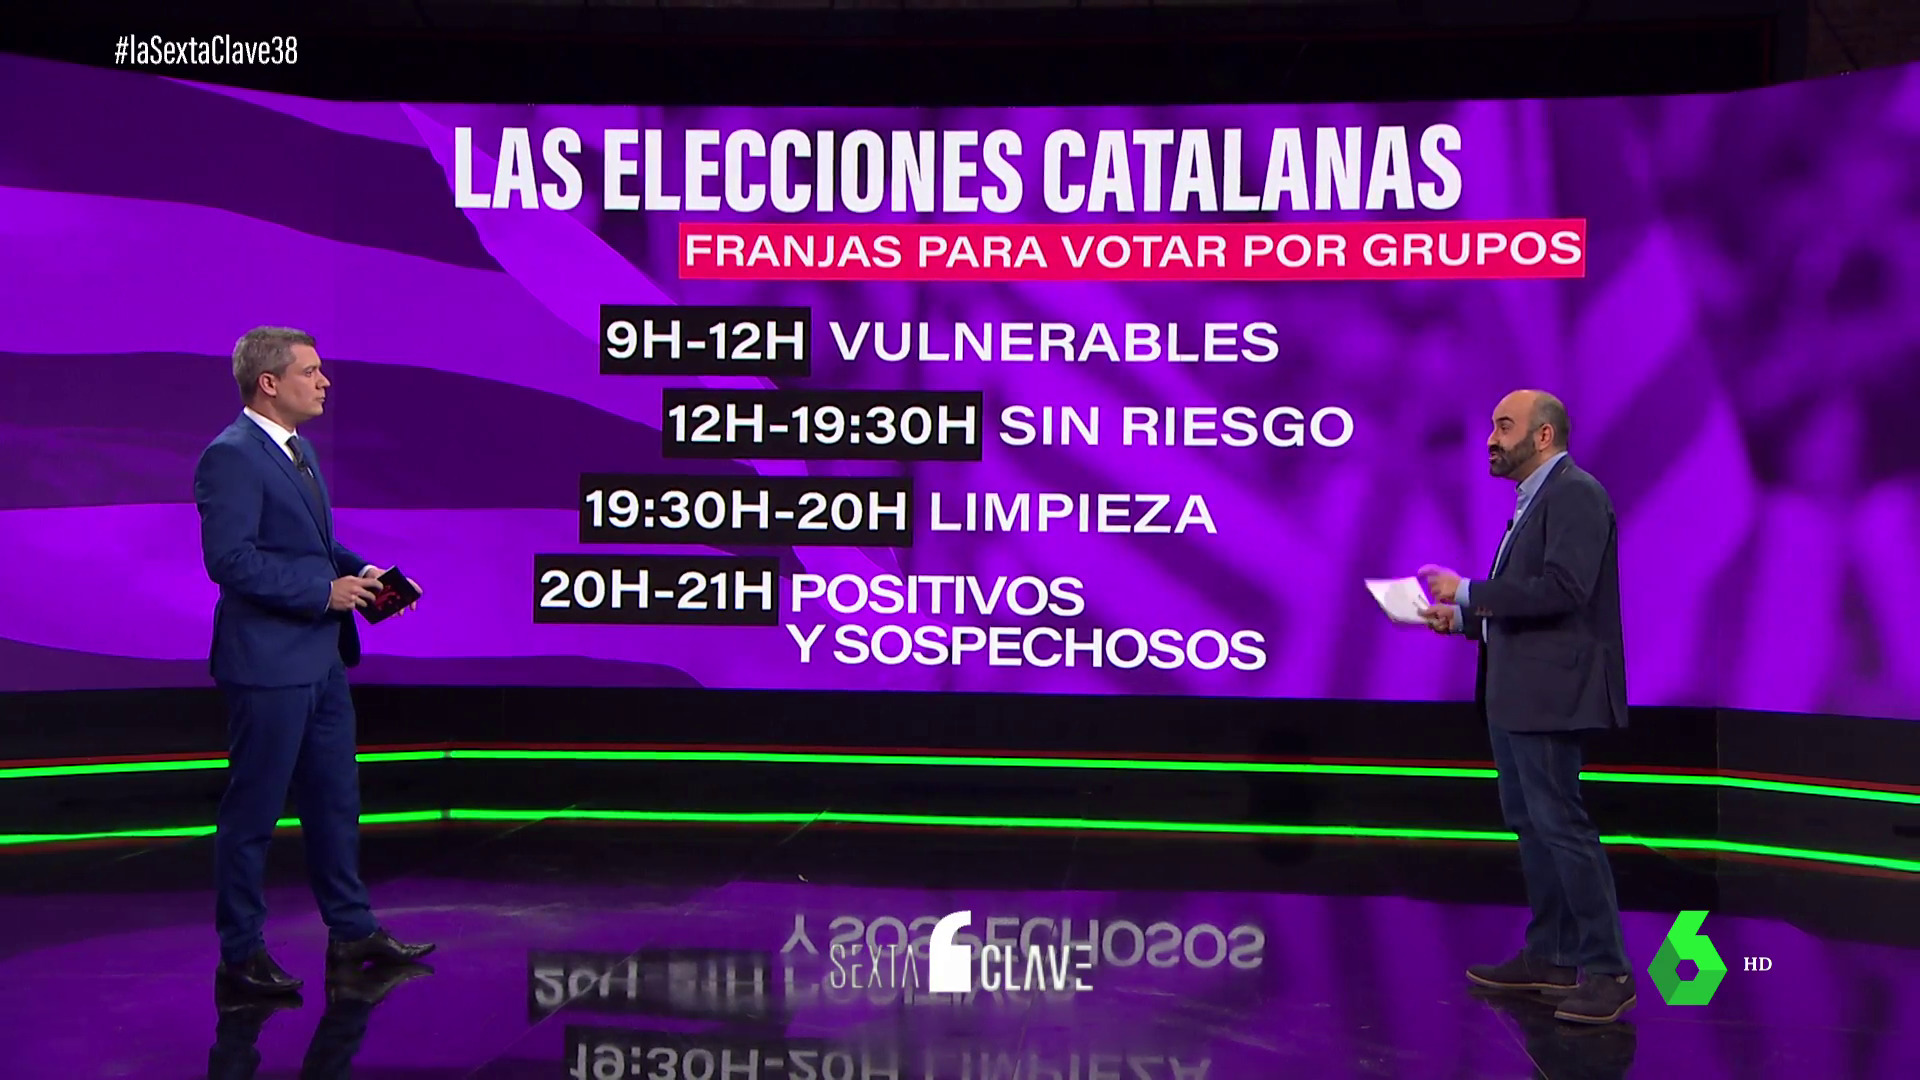 Diciembre 2020 (04-12-20) ¿Cómo serán las elecciones catalanas?